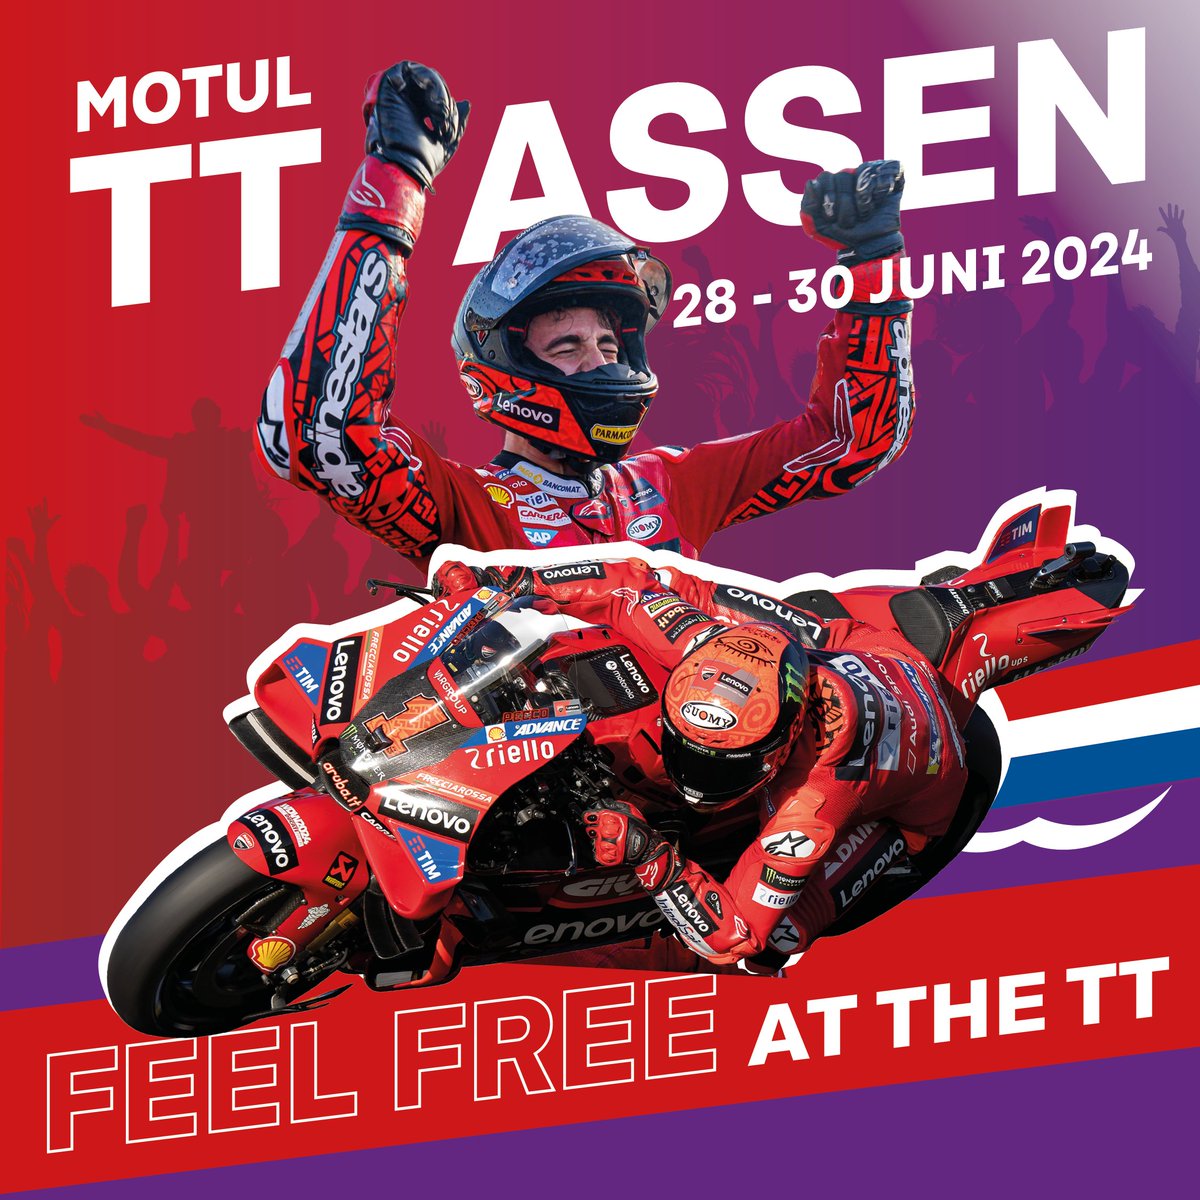 De GP van Jerez op tv, mooi moment om tickets te bestellen voor de TT! Check ttcircuit.com voor de beschikbaarheid per tribune #TTAssen